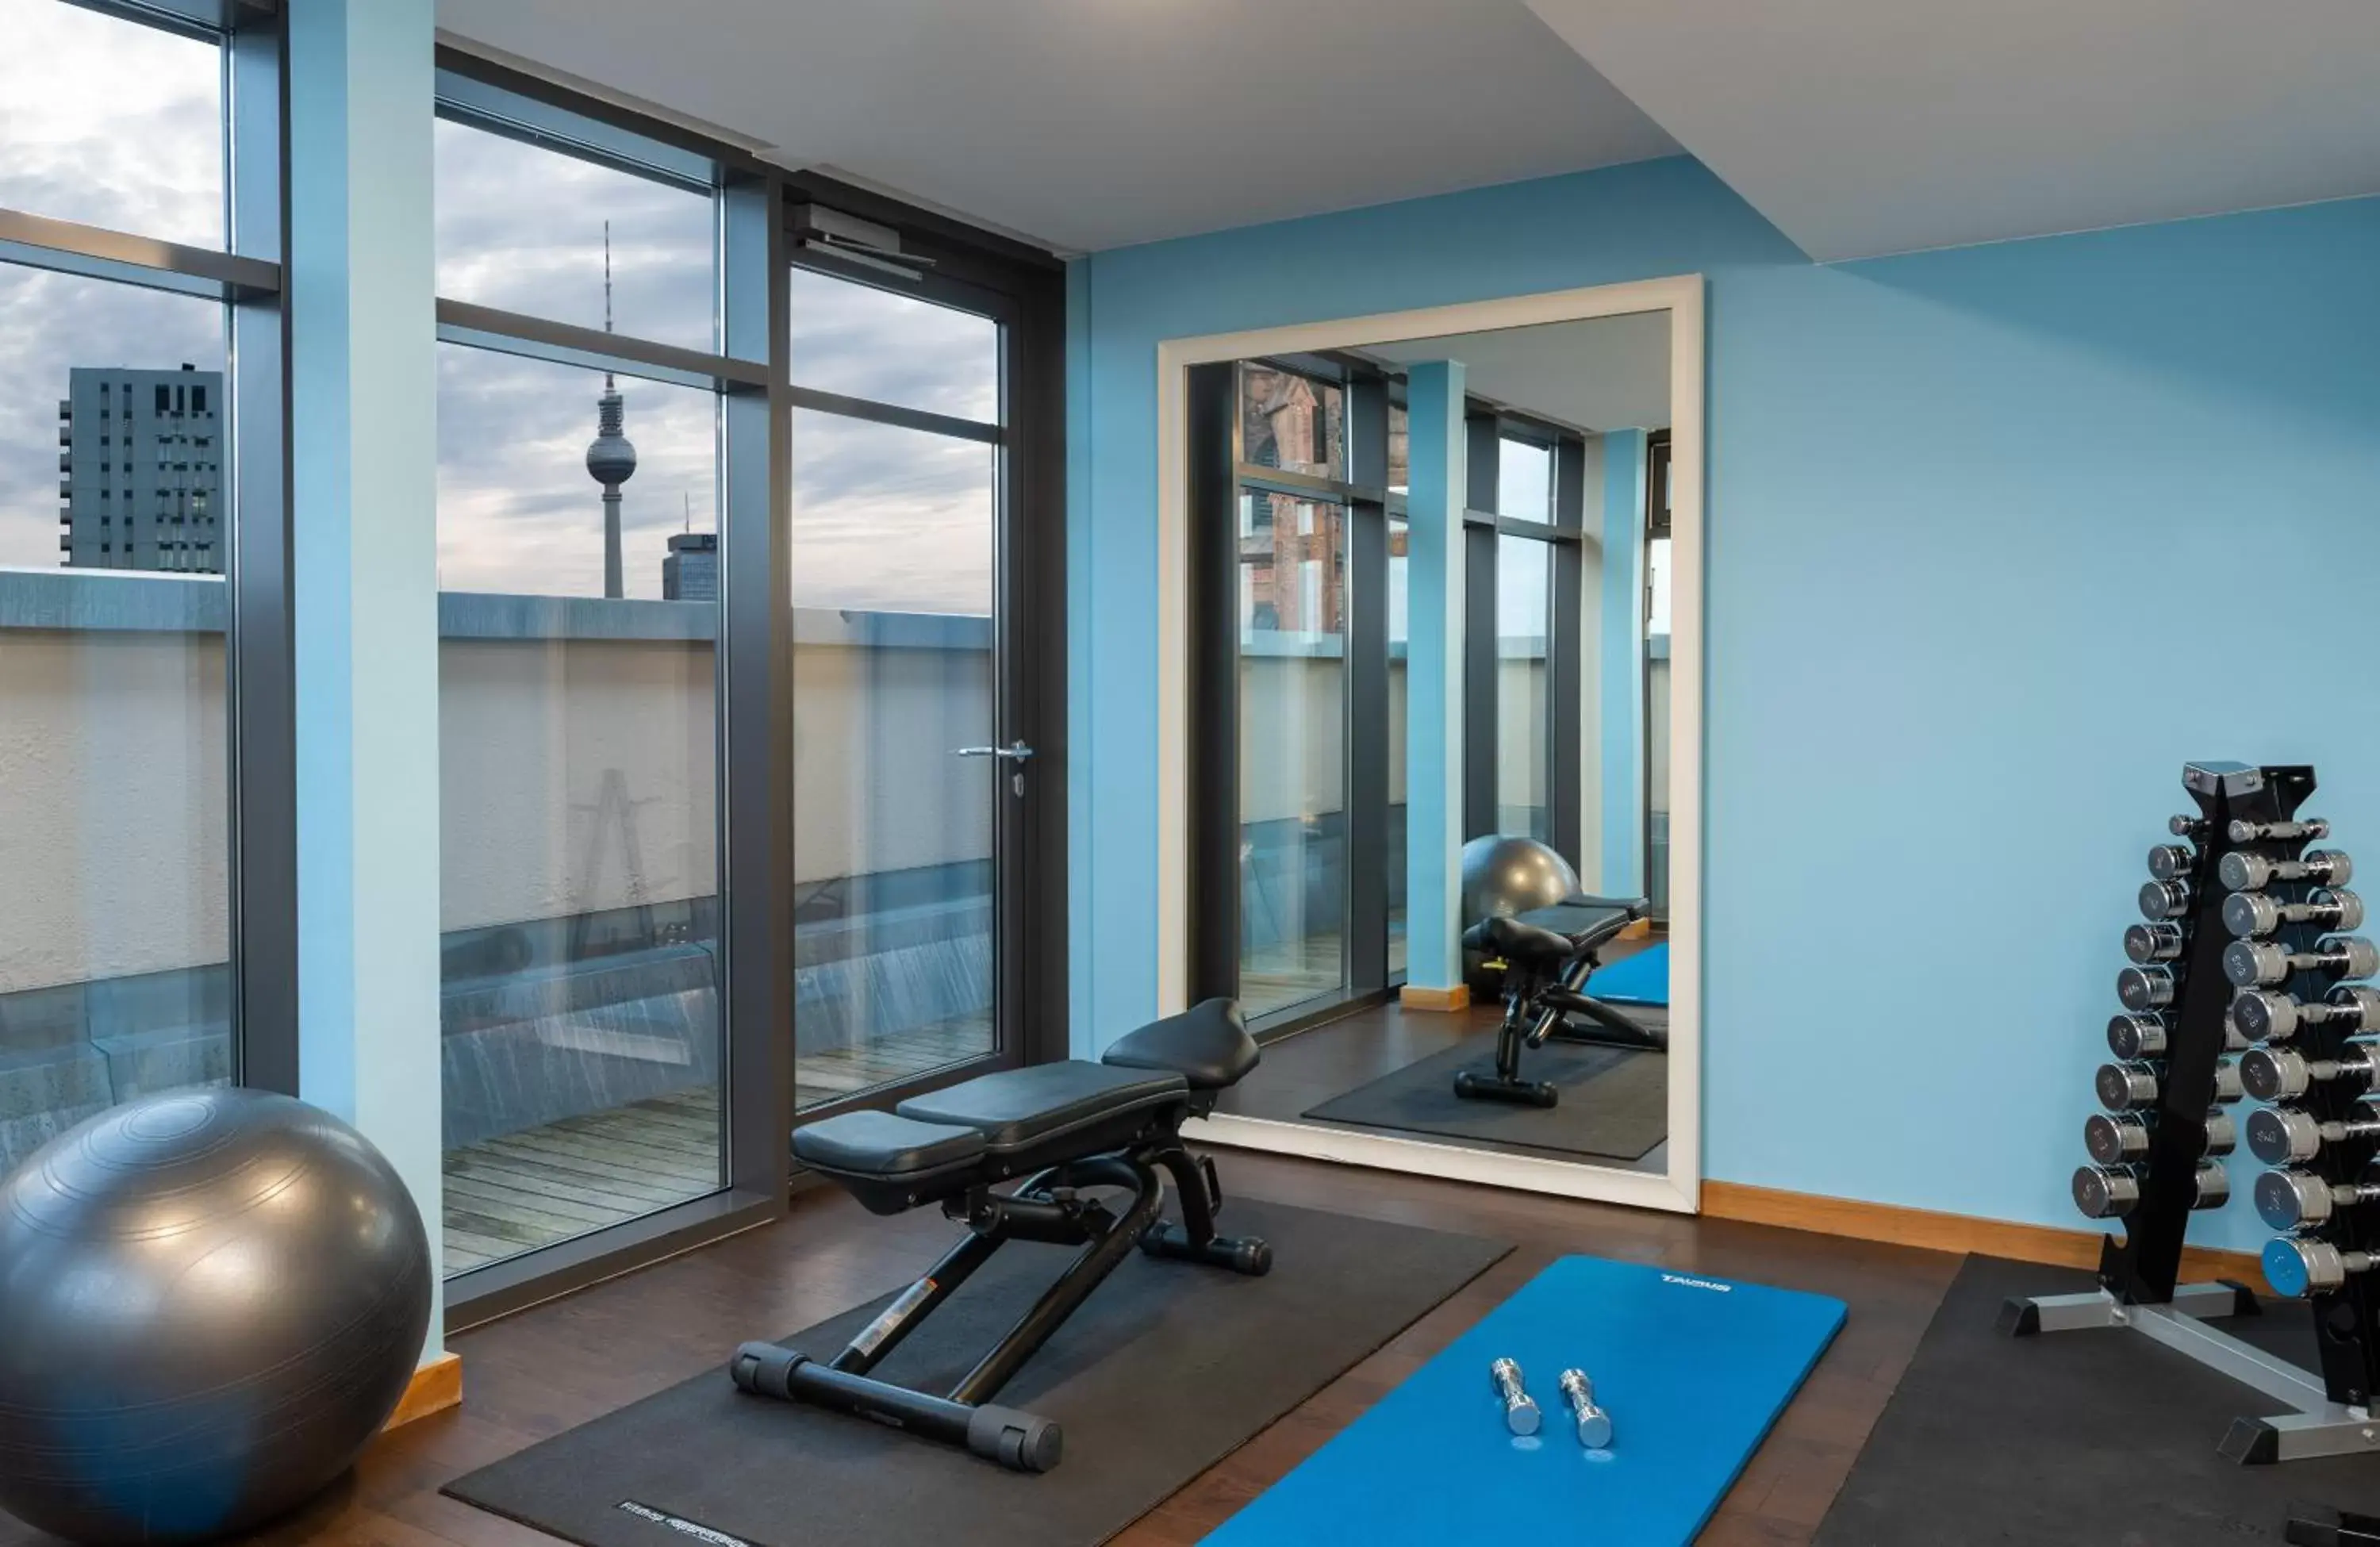 Fitness centre/facilities, Fitness Center/Facilities in Leonardo Royal Hotel Berlin Alexanderplatz